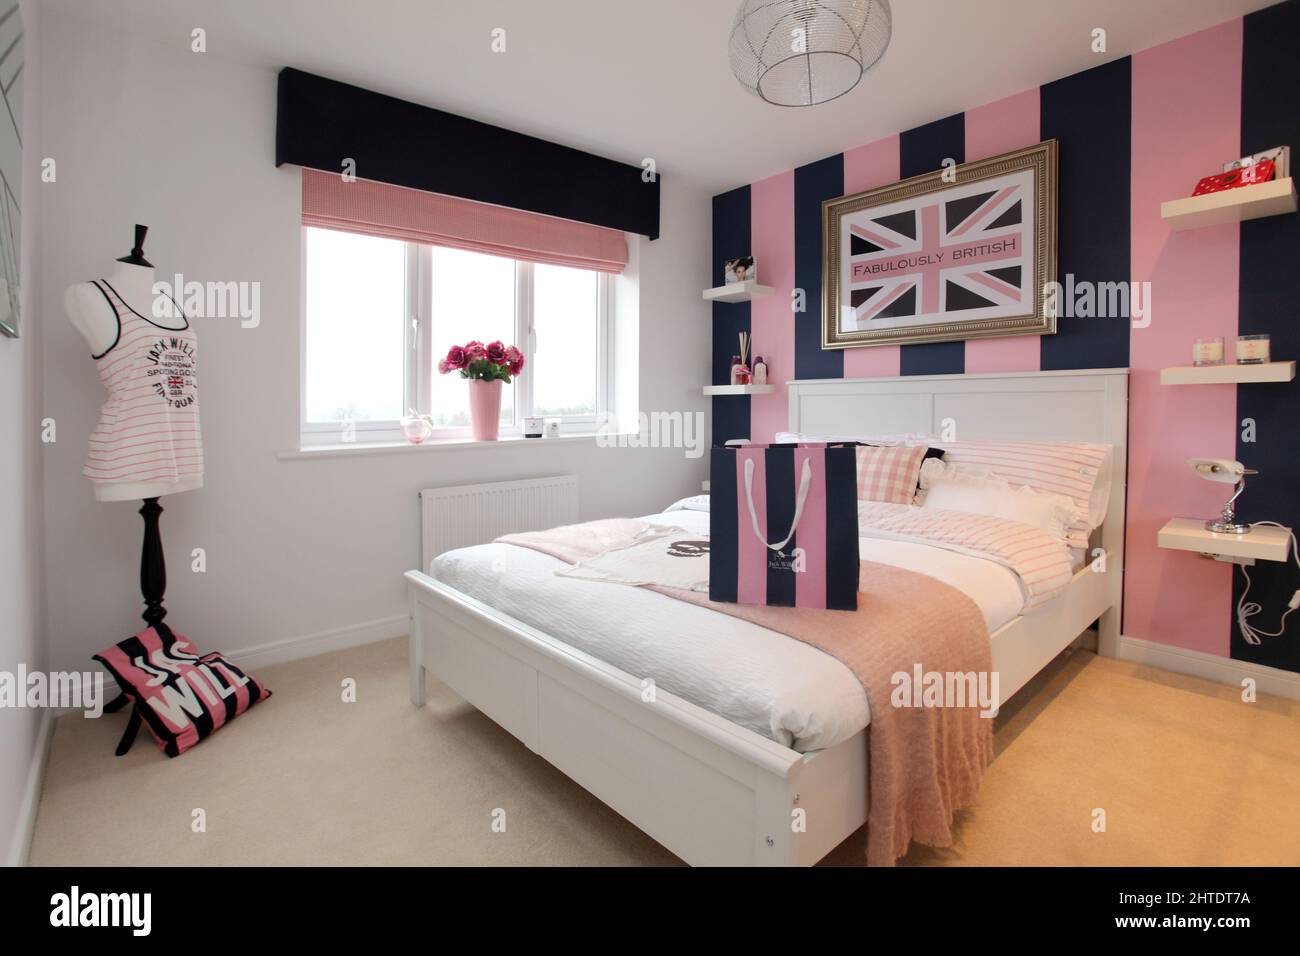 Chambre moderne dans nouvelle maison, couvre-lit, couleur beige rose, thème Jack Wills Banque D'Images